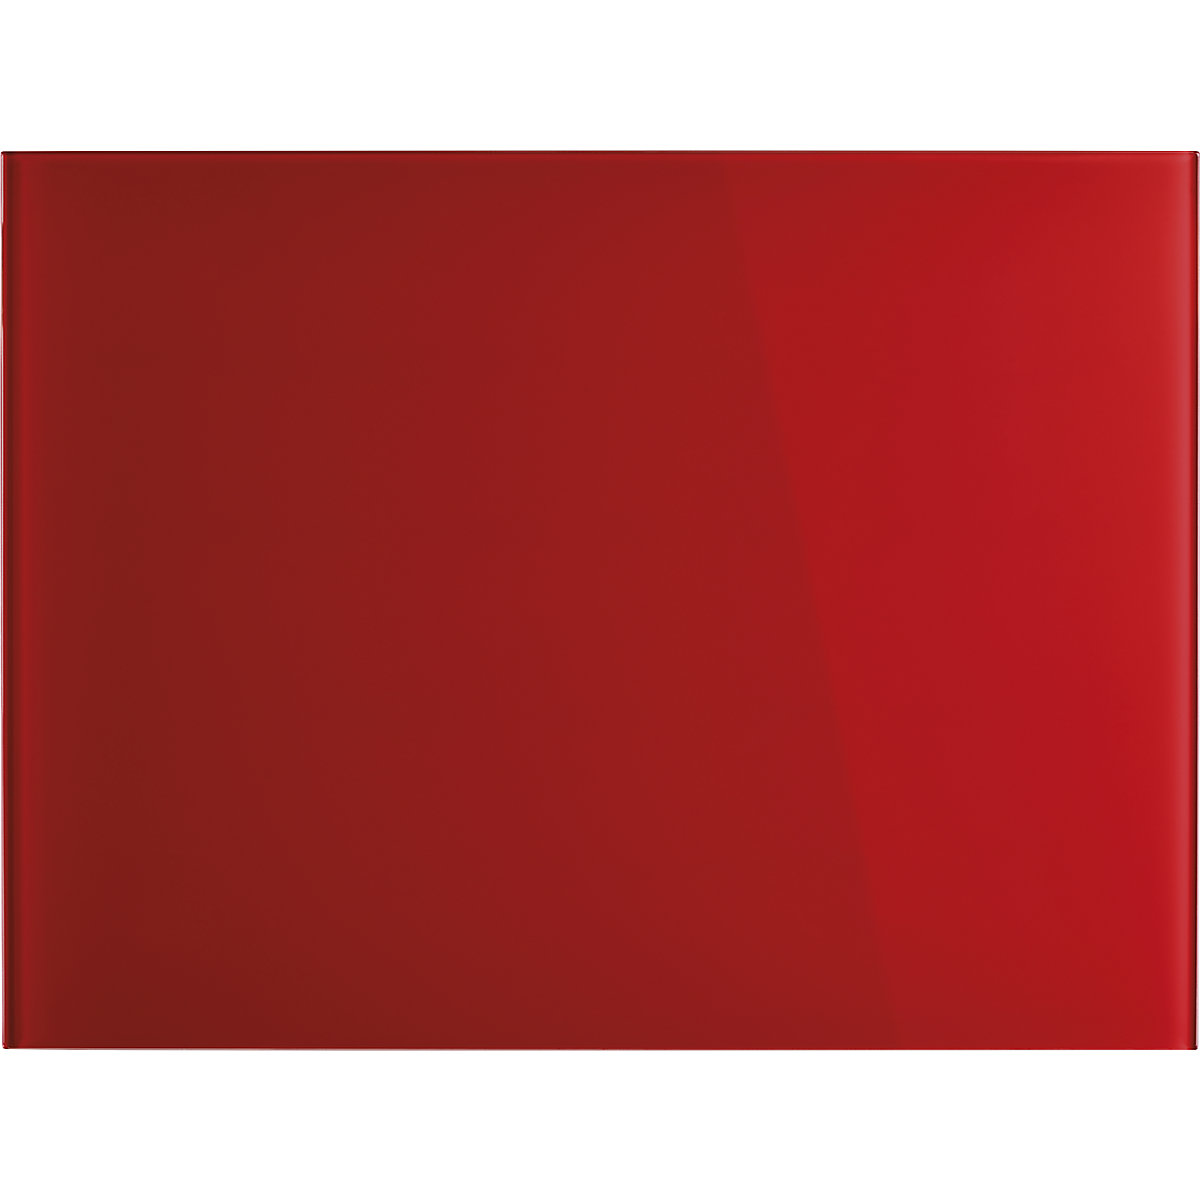 magnetoplan – Panel de cristal de diseño, magnético, A x H 800 x 600 mm, color rojo intenso